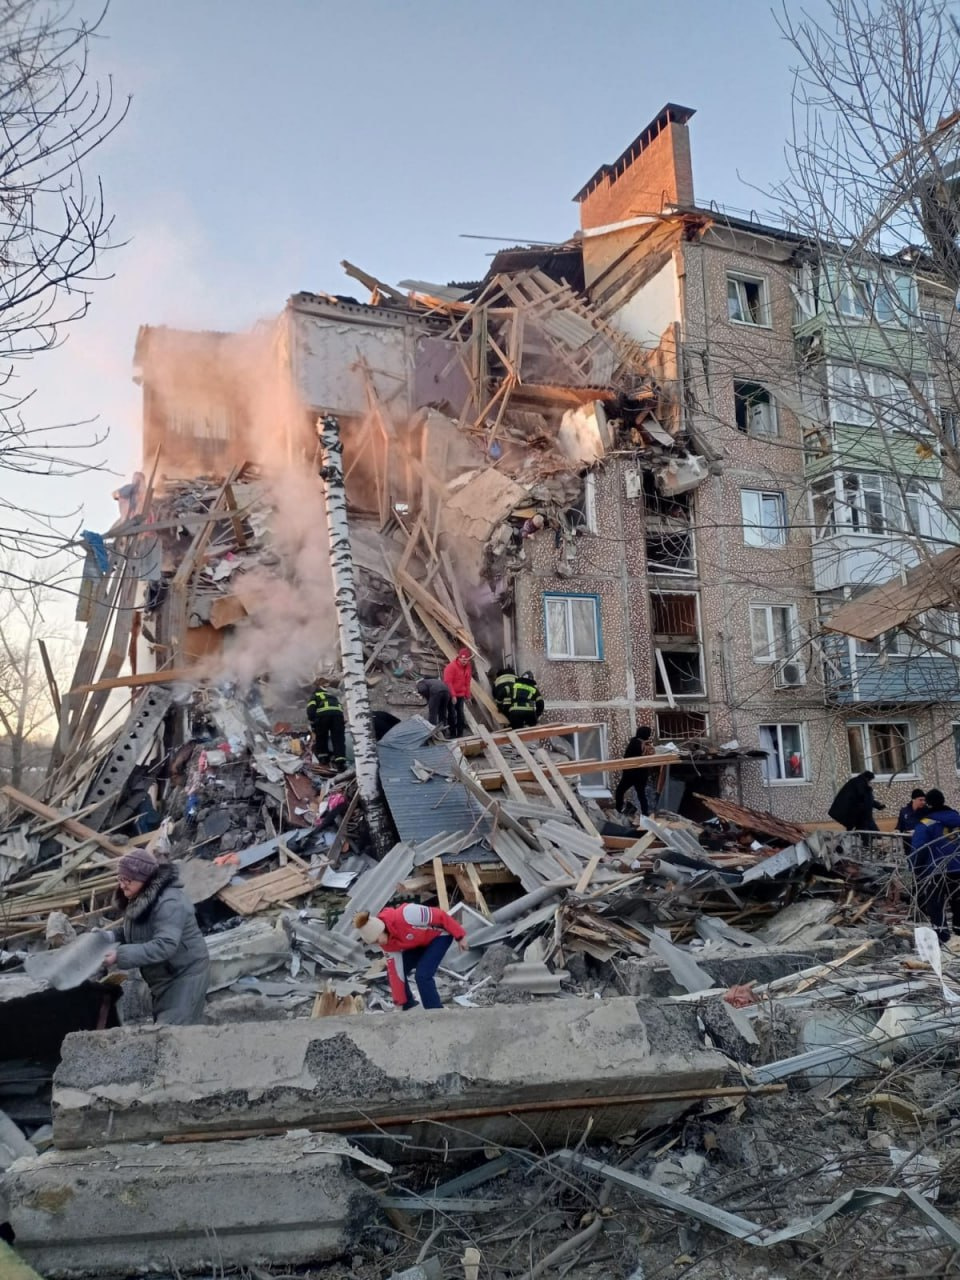 Администрация города Ефремова опубликовала несколько фото с места происшествия